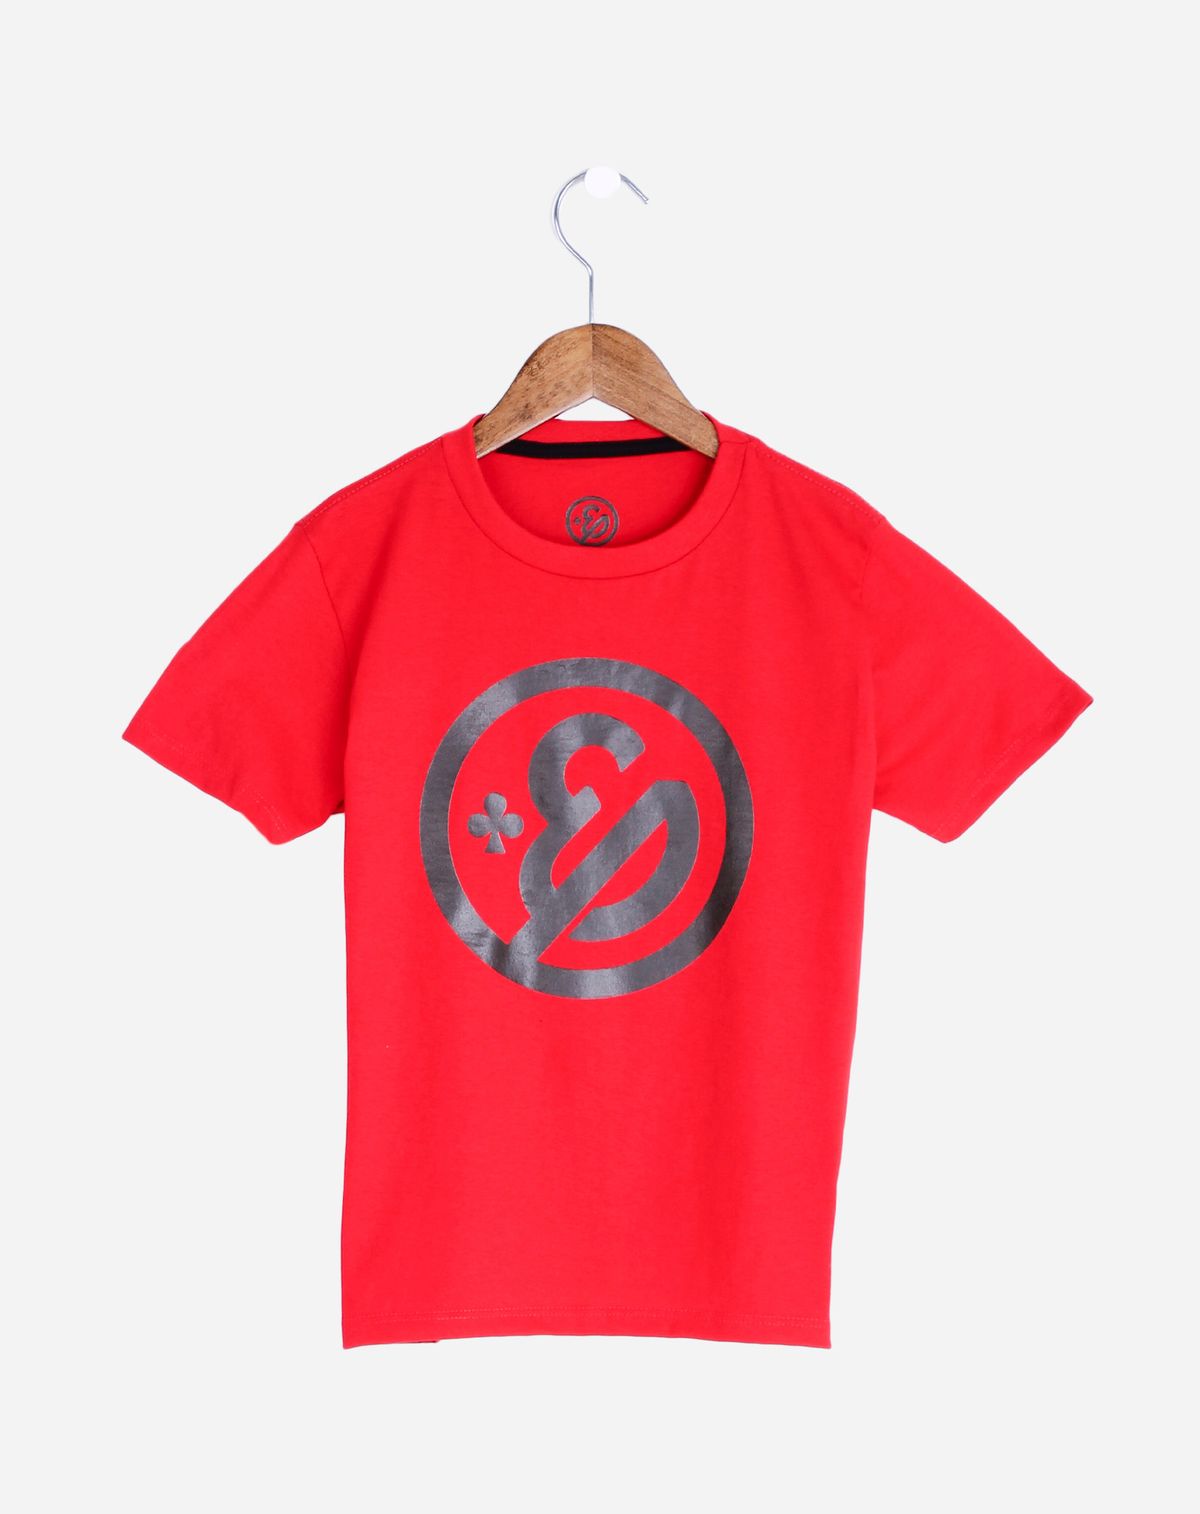 701949005-camiseta-manga-curta-infantil-menino-enaldinho-vermelho-4-50c